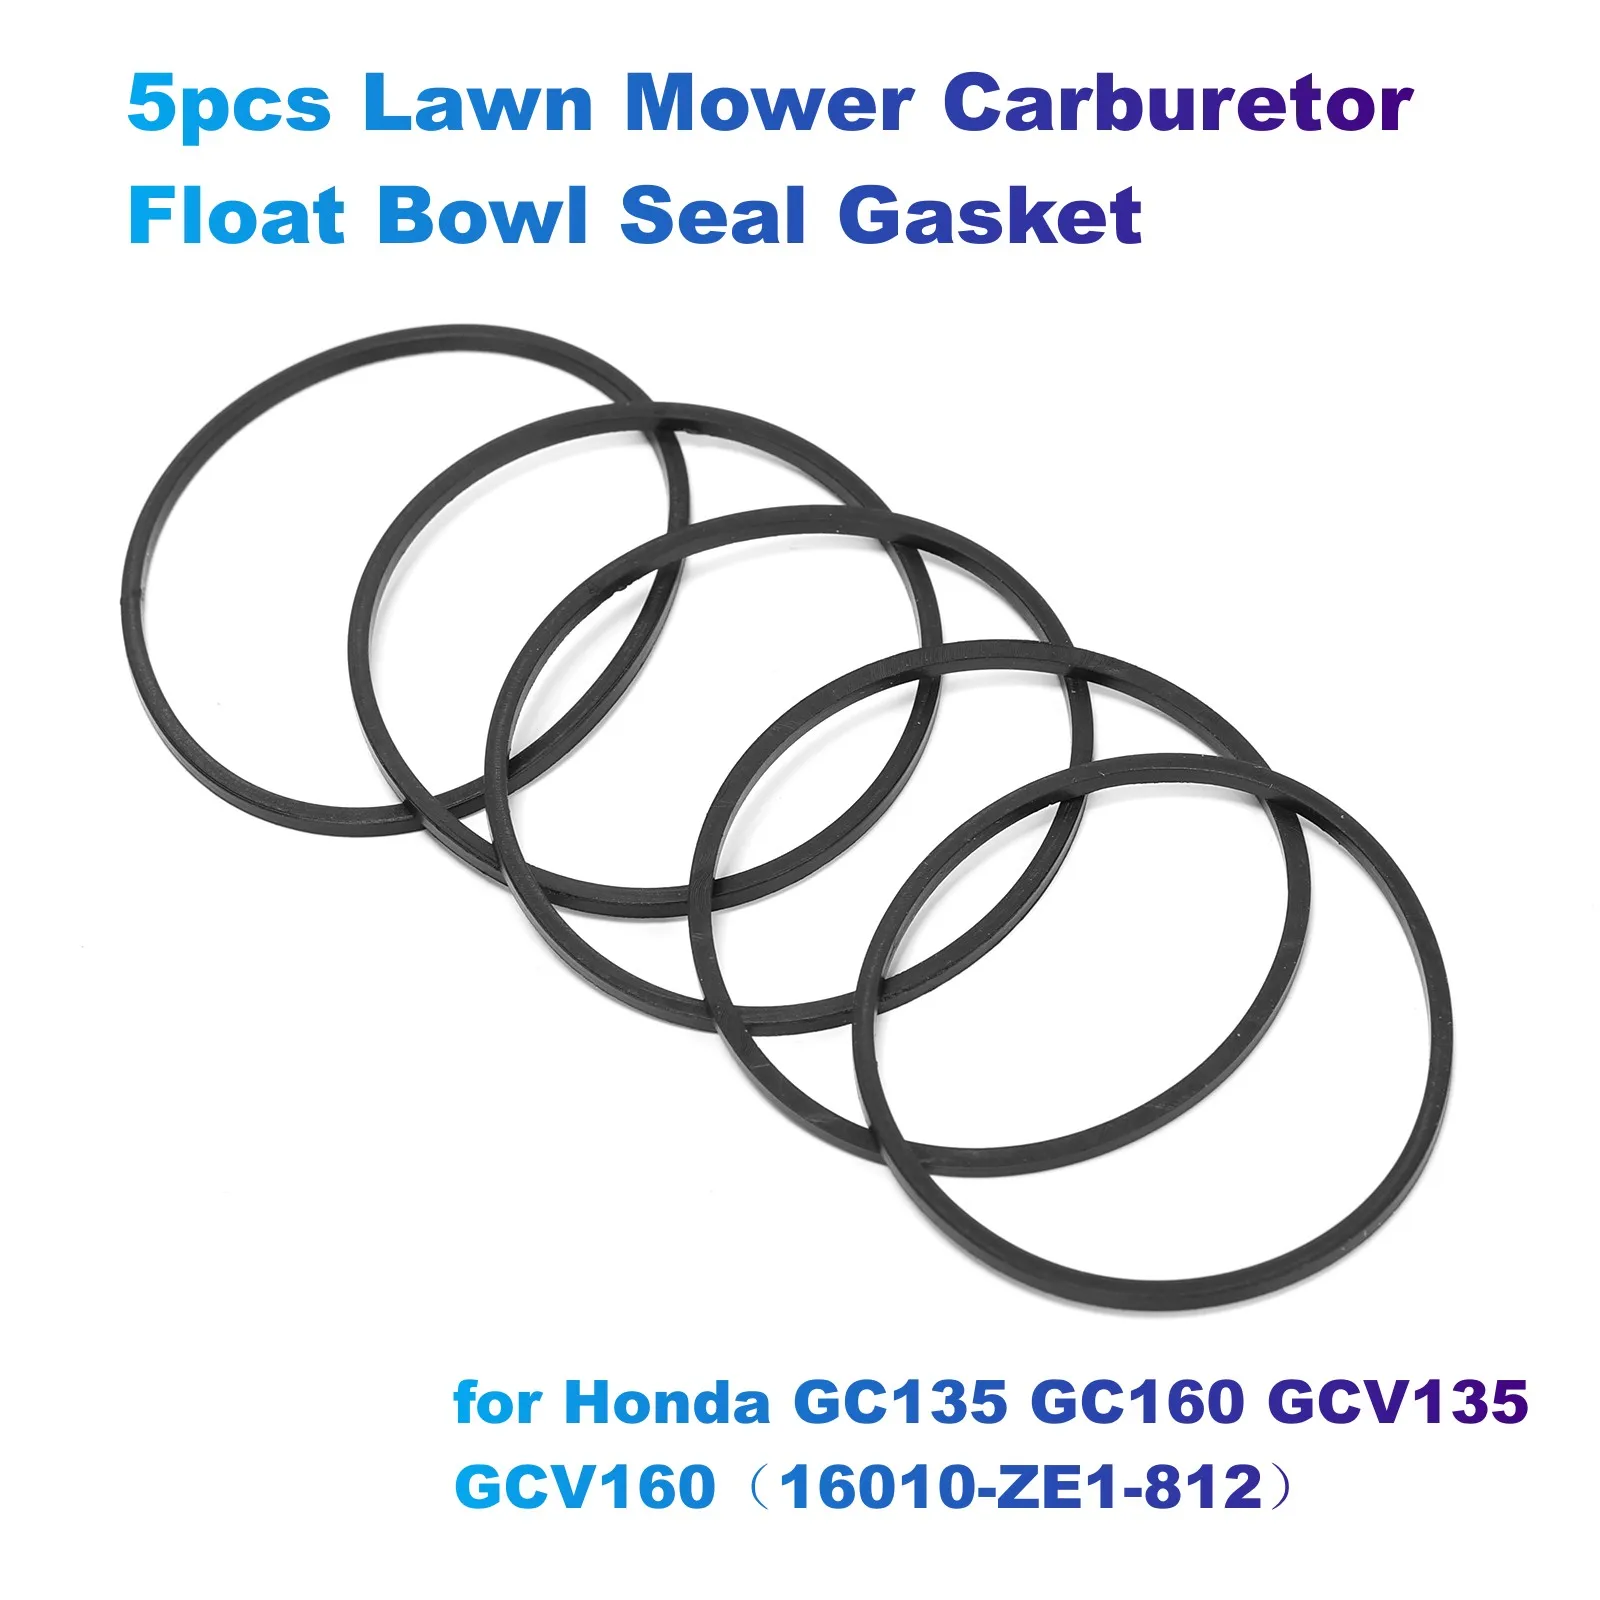 5pcs Lawn Mower Carburetor Float Bowl Seal Gasket for Honda GC135 GC160 GCV135 GCV160（16010-ZE1-812） carburetor gasket repair kit for honda gcv135 gcv160 hrb425c hrb475c hrb476c hrb536c hrg536engine lawn mower motor carby replace